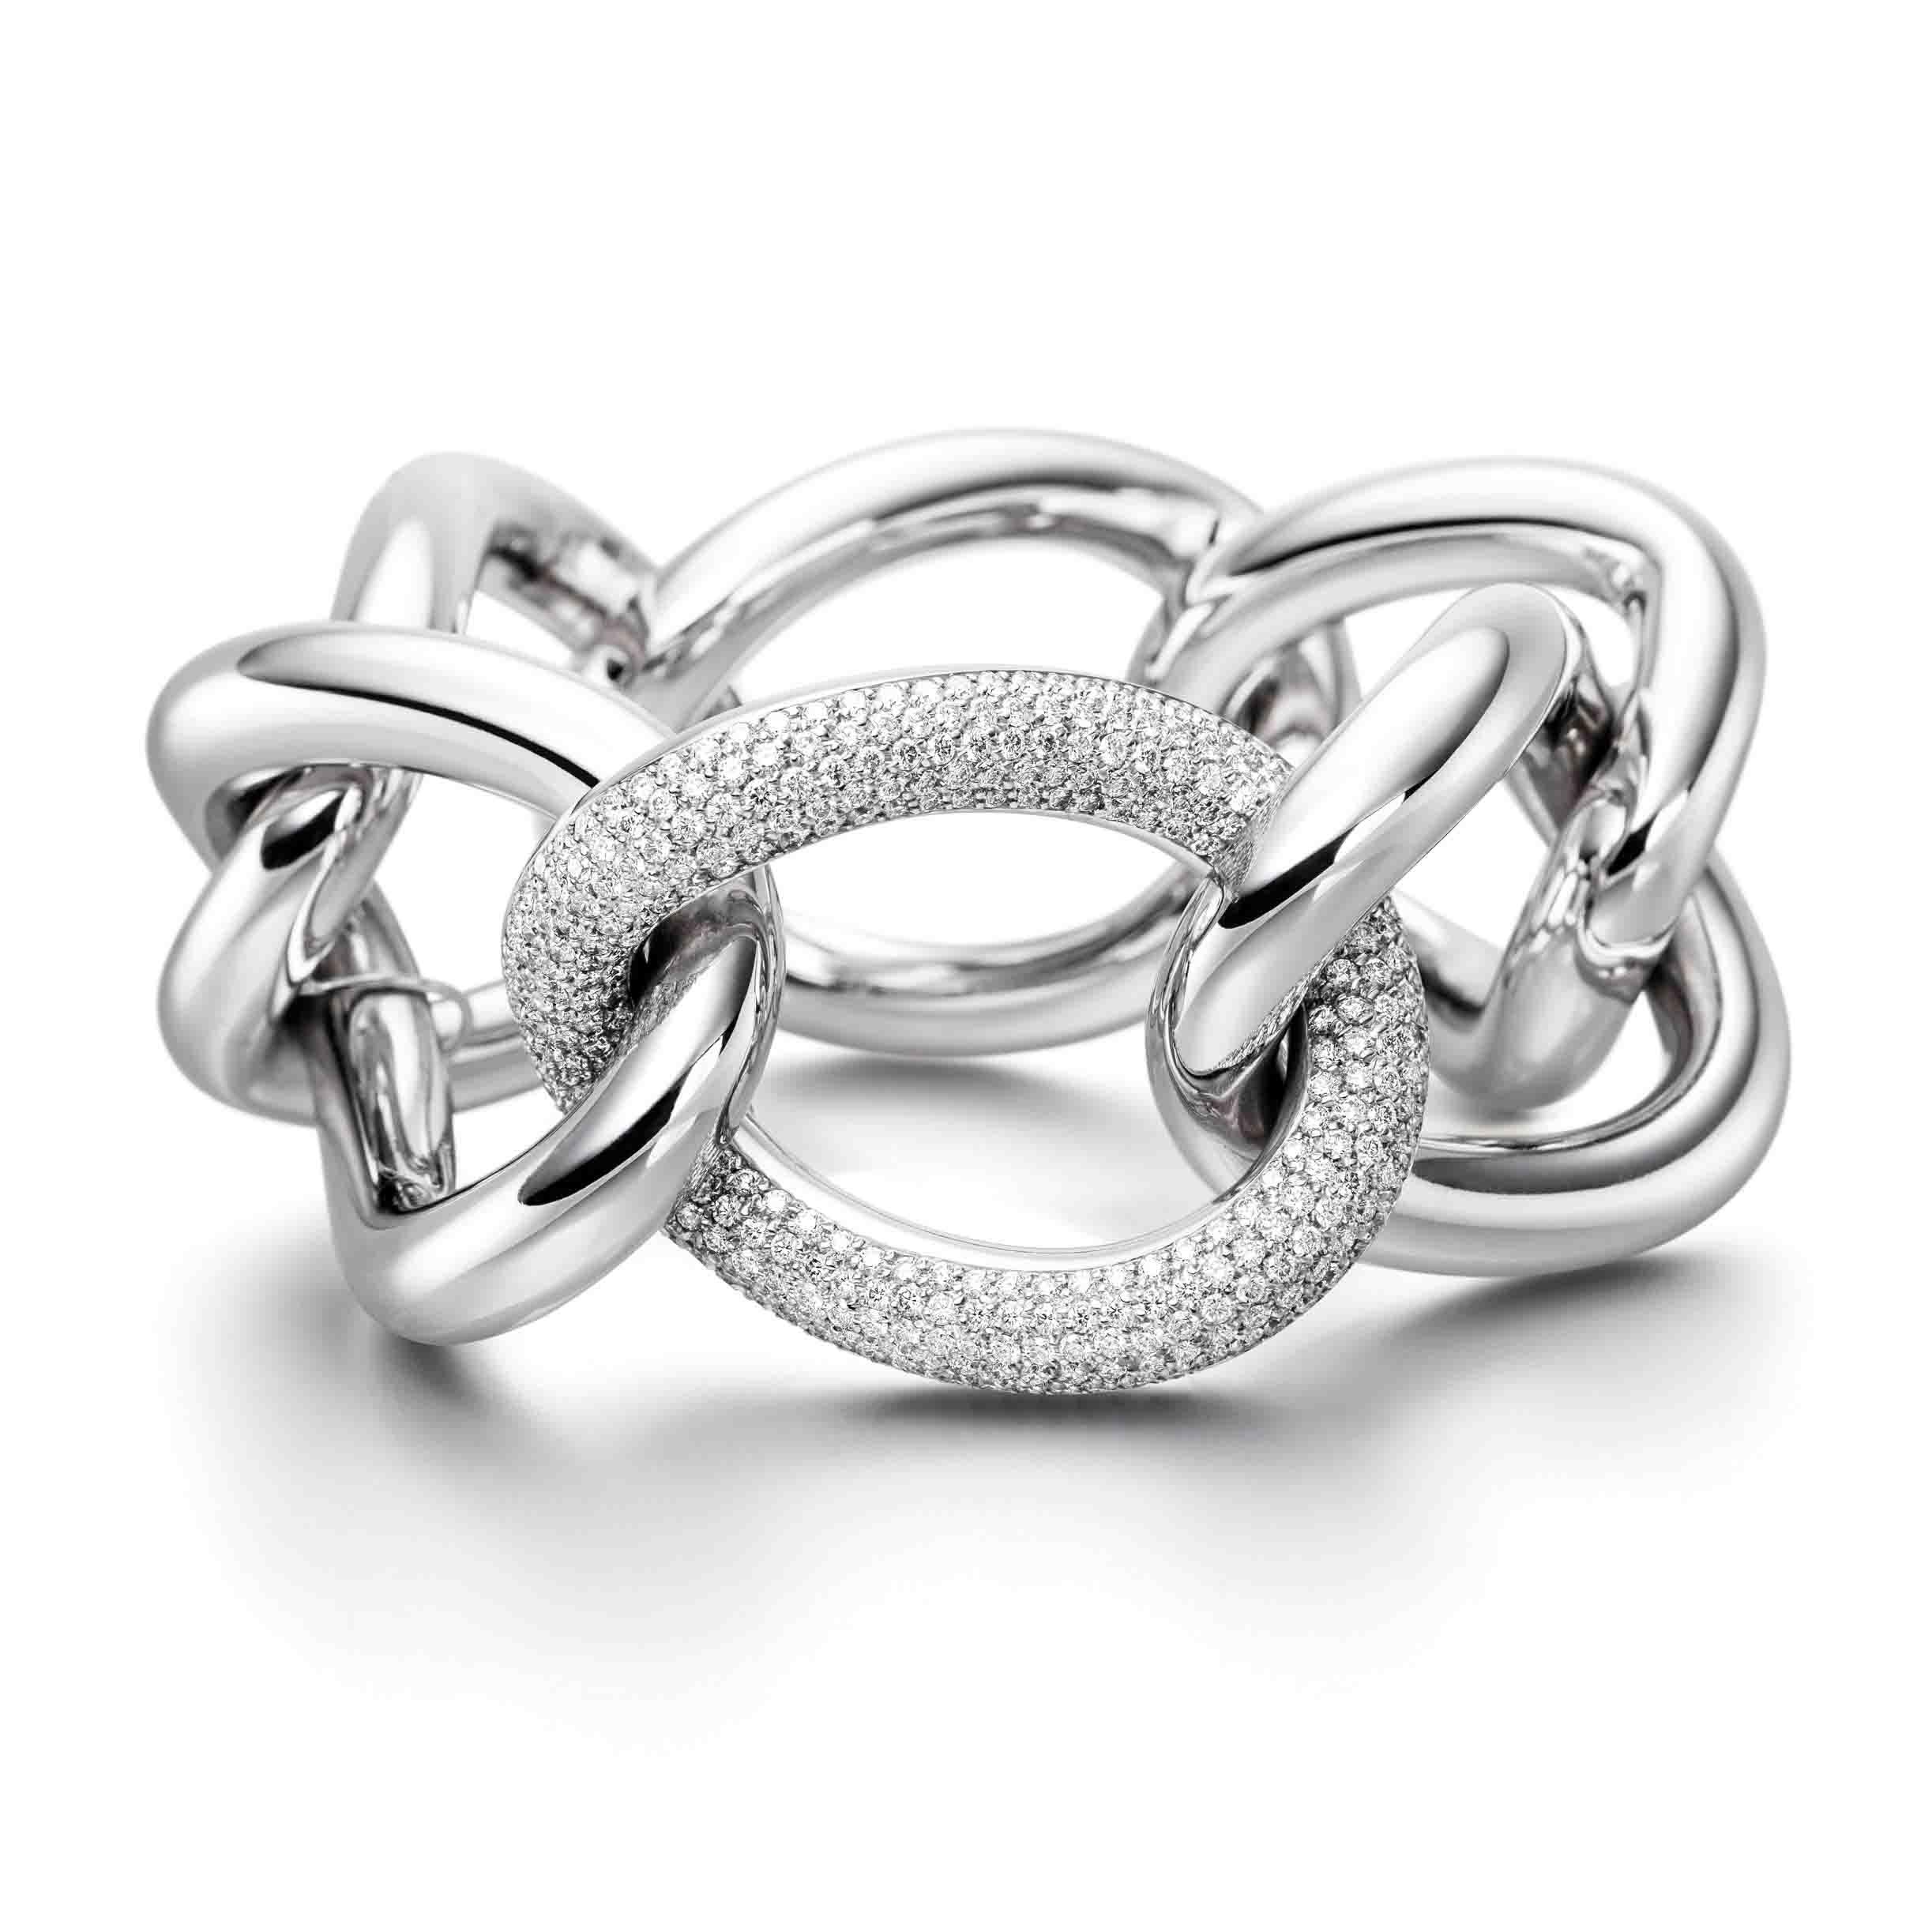 Wholesale OEM/ODM Jewelry oem bracelet jewelry custom silver jewellry with cz in wholesale